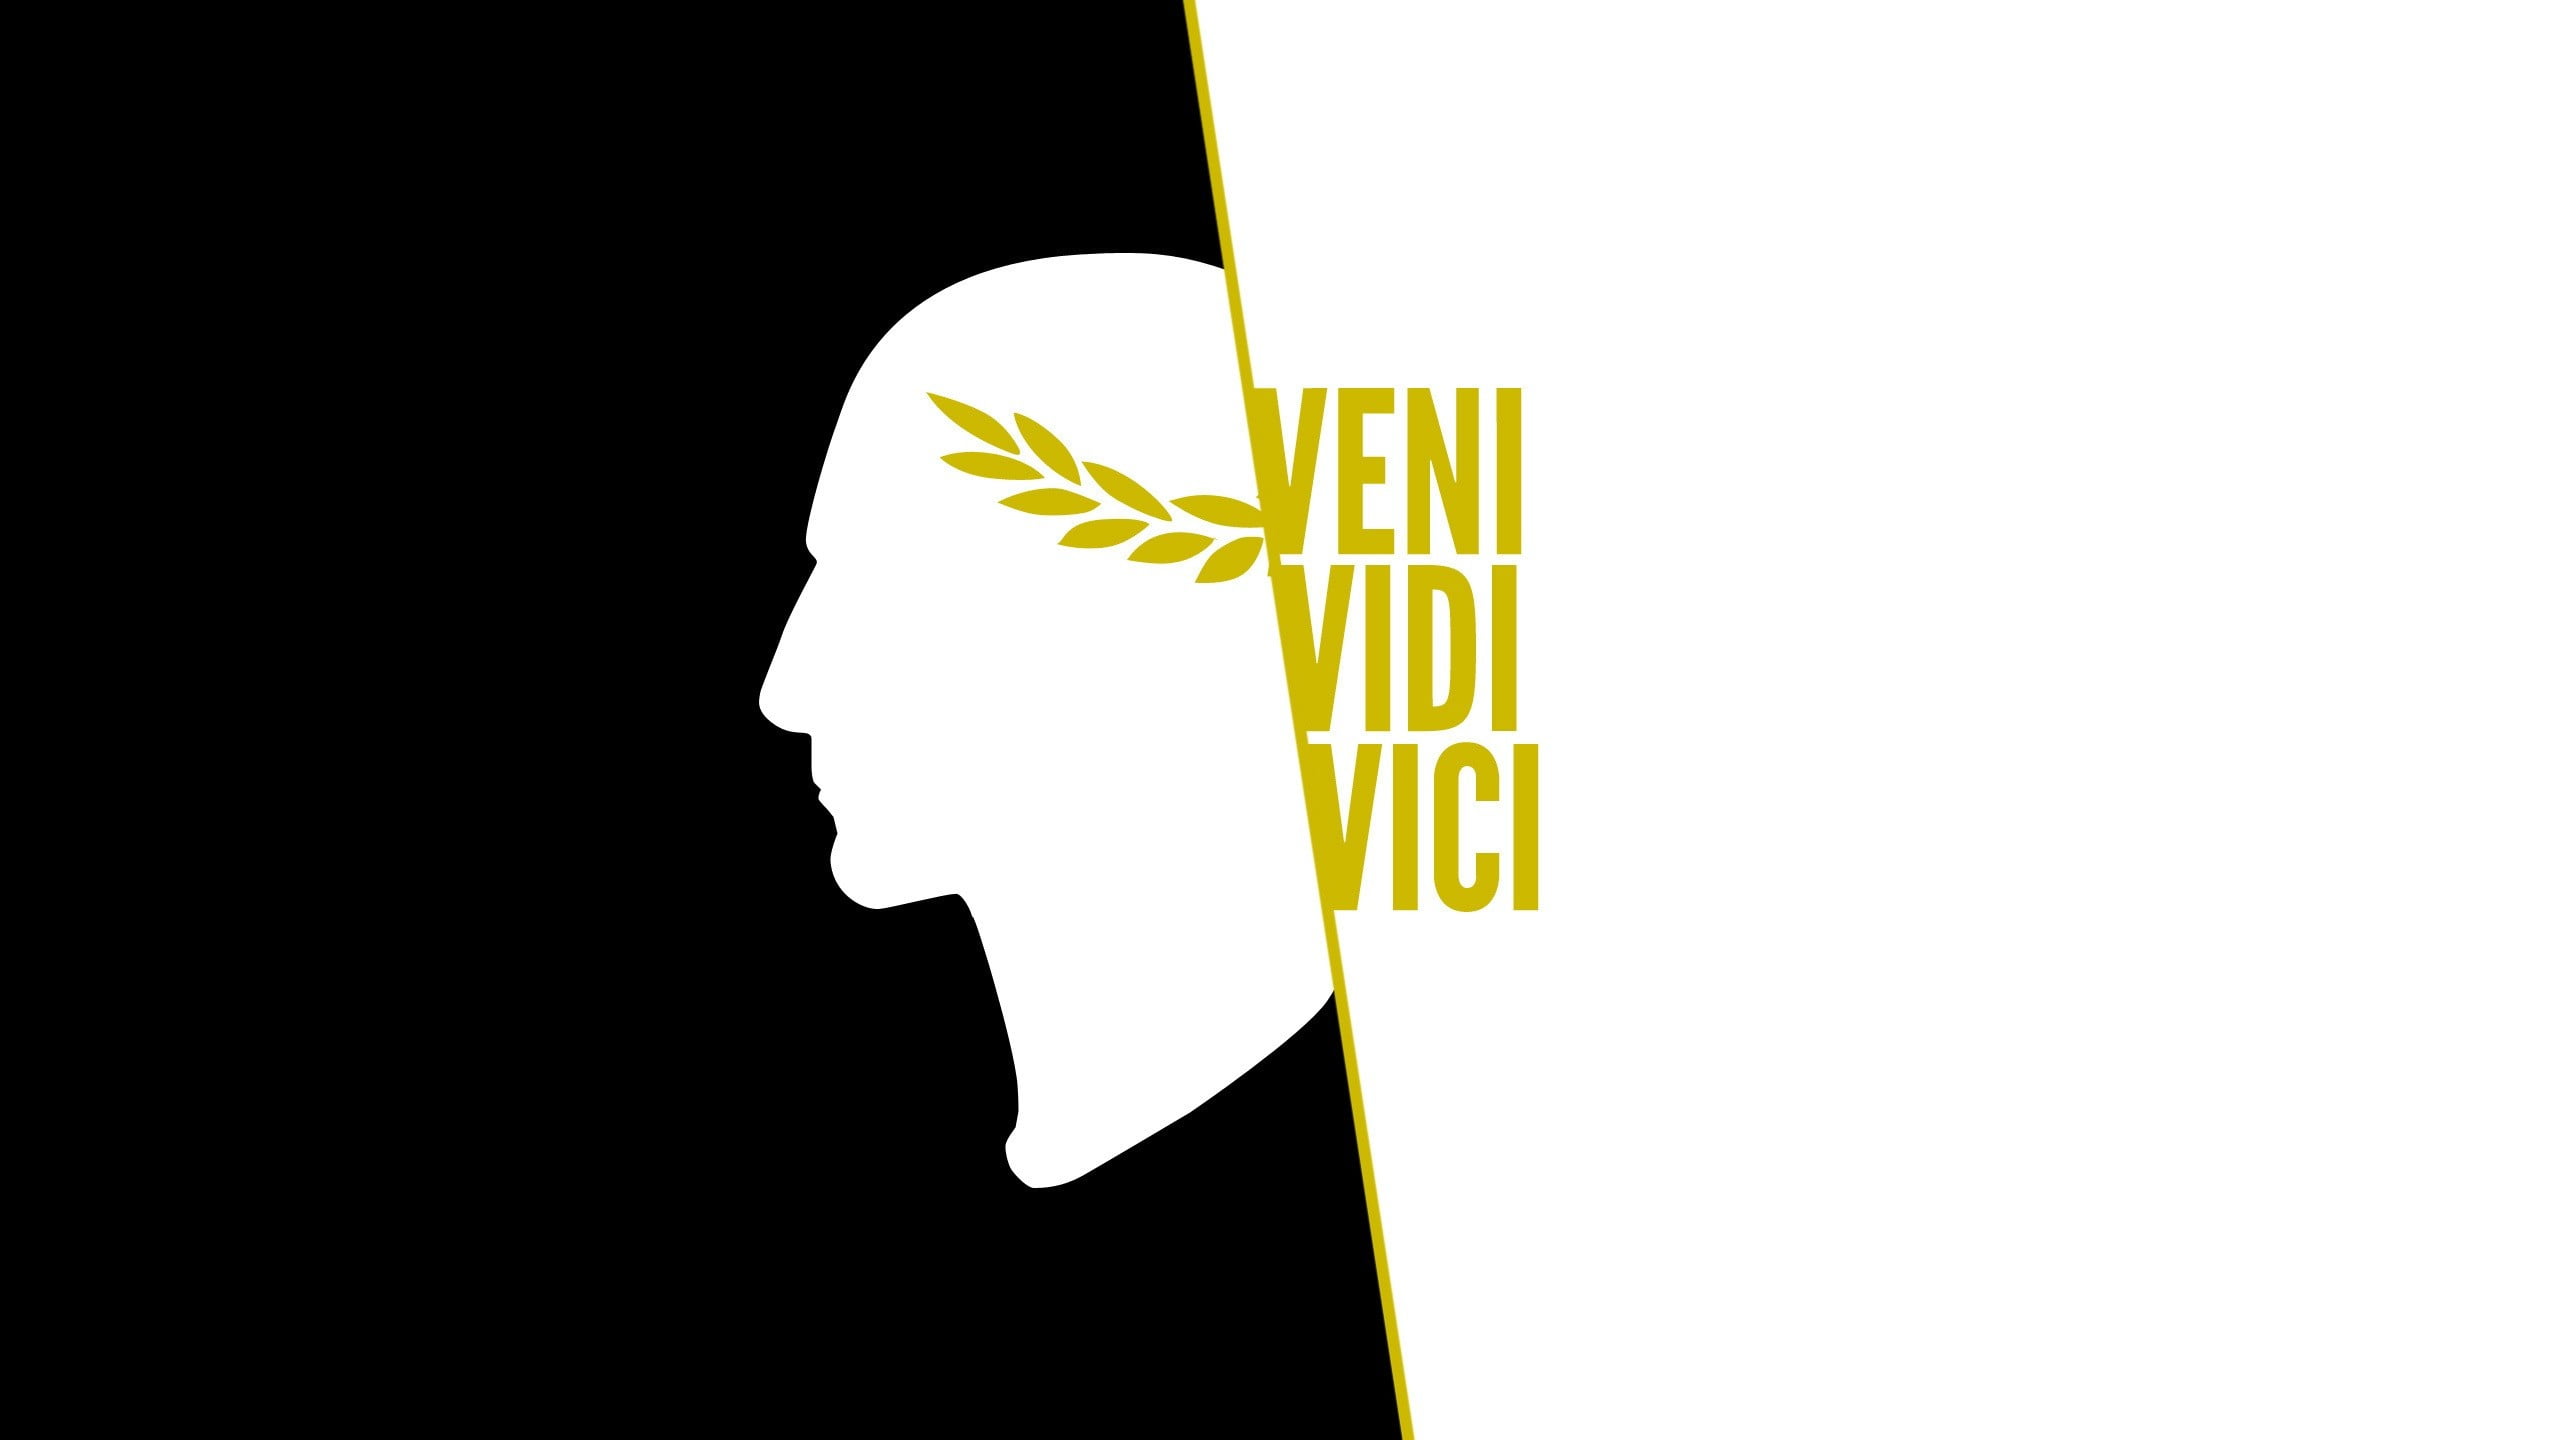 VENI VIDI VICI  Zyzz wallpaper, Veni vidi vici, Creative infographic